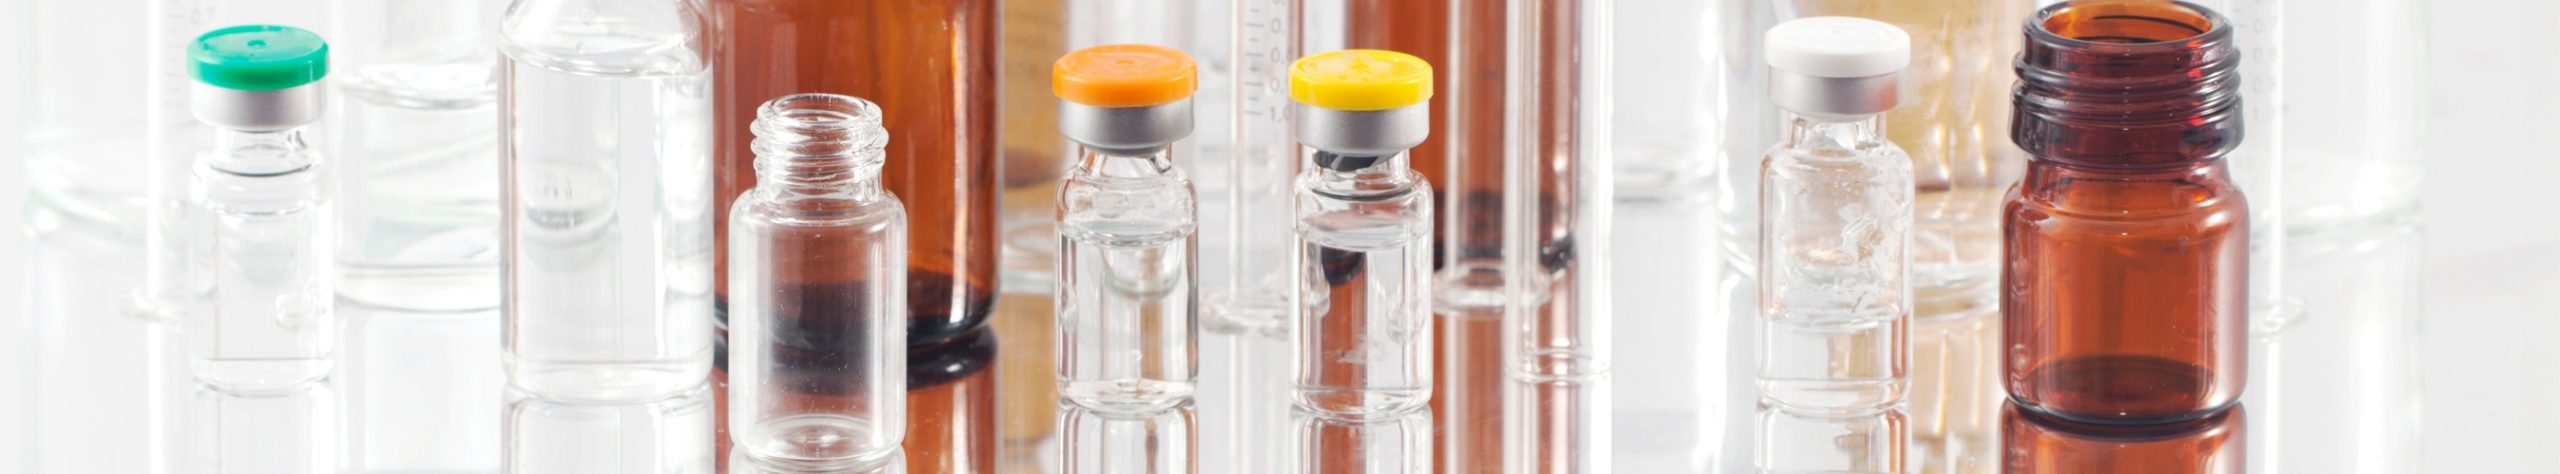 plastic vials and glass vials